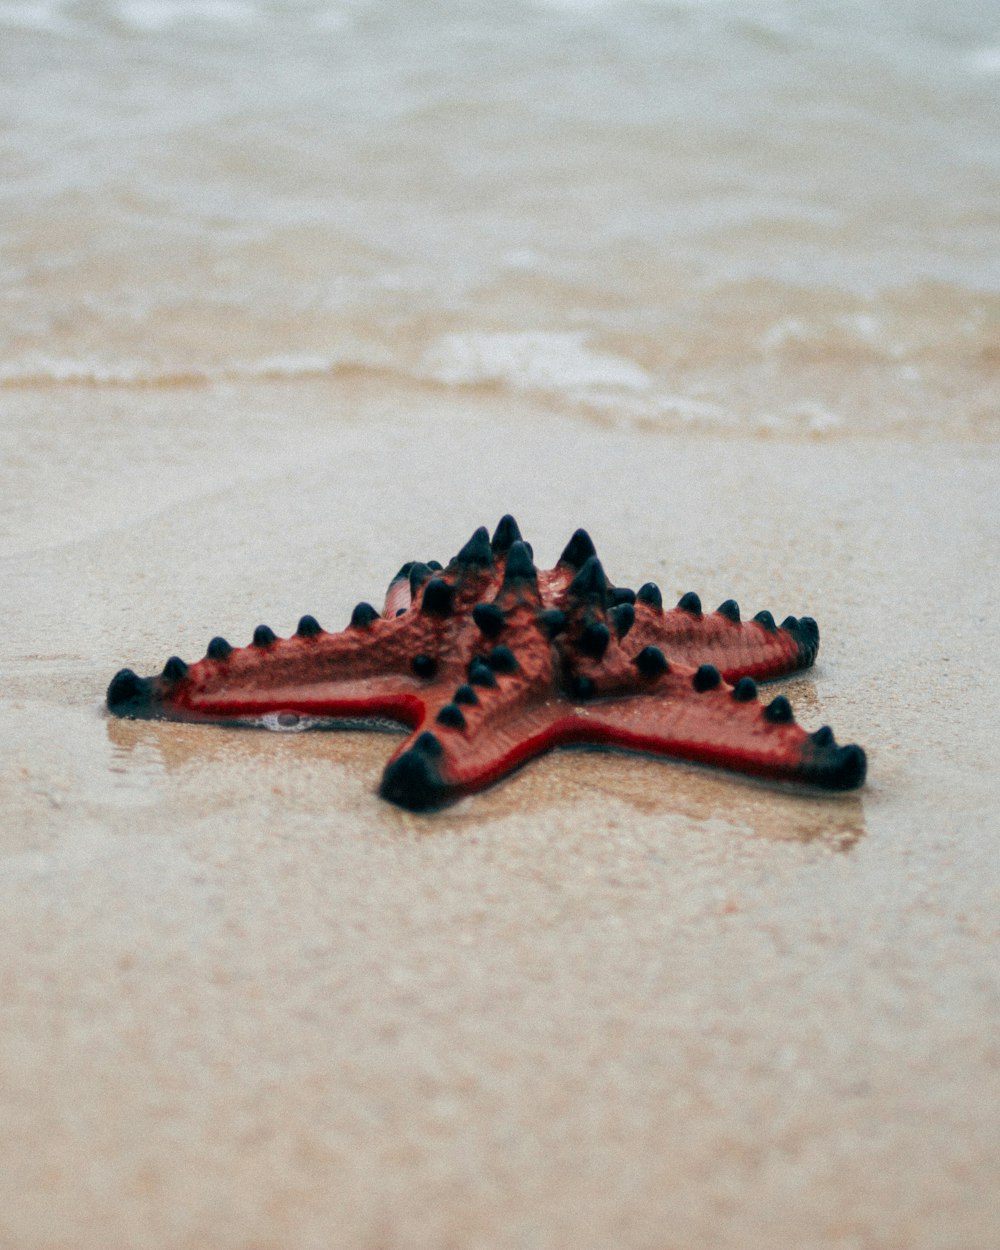 brown starfish on white sand